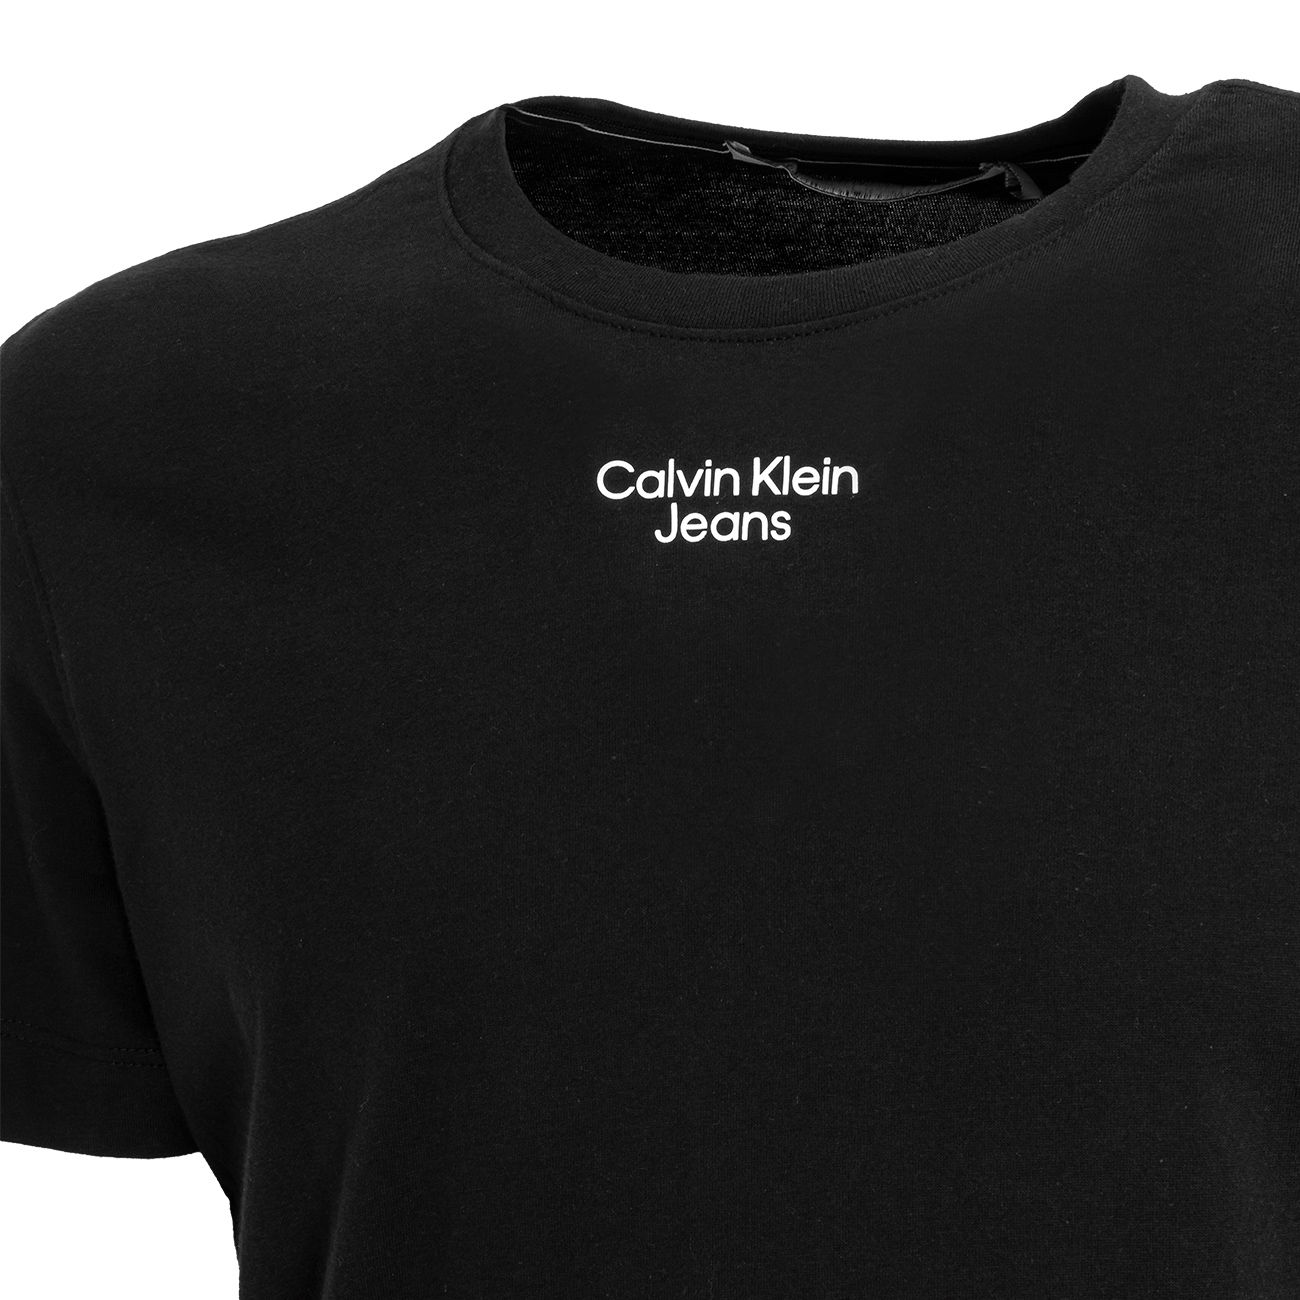 KLEIN T-SHIRT Store LOGO CALVIN Beh JEANS Black Mascheroni | Man STACKED